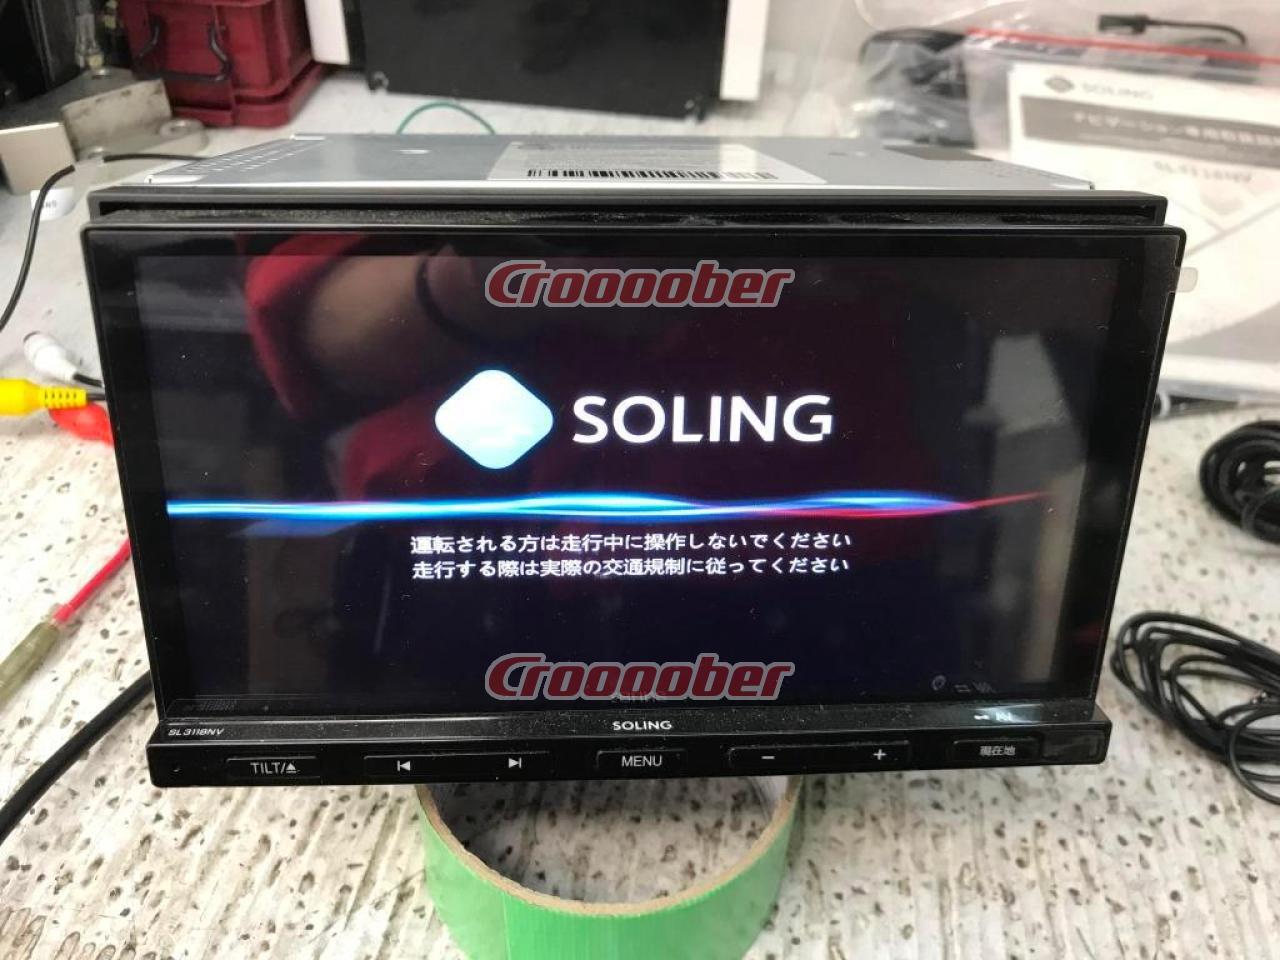 SOLING SL3118NV Fullseg Model | Memory Navigation(digital) | Croooober